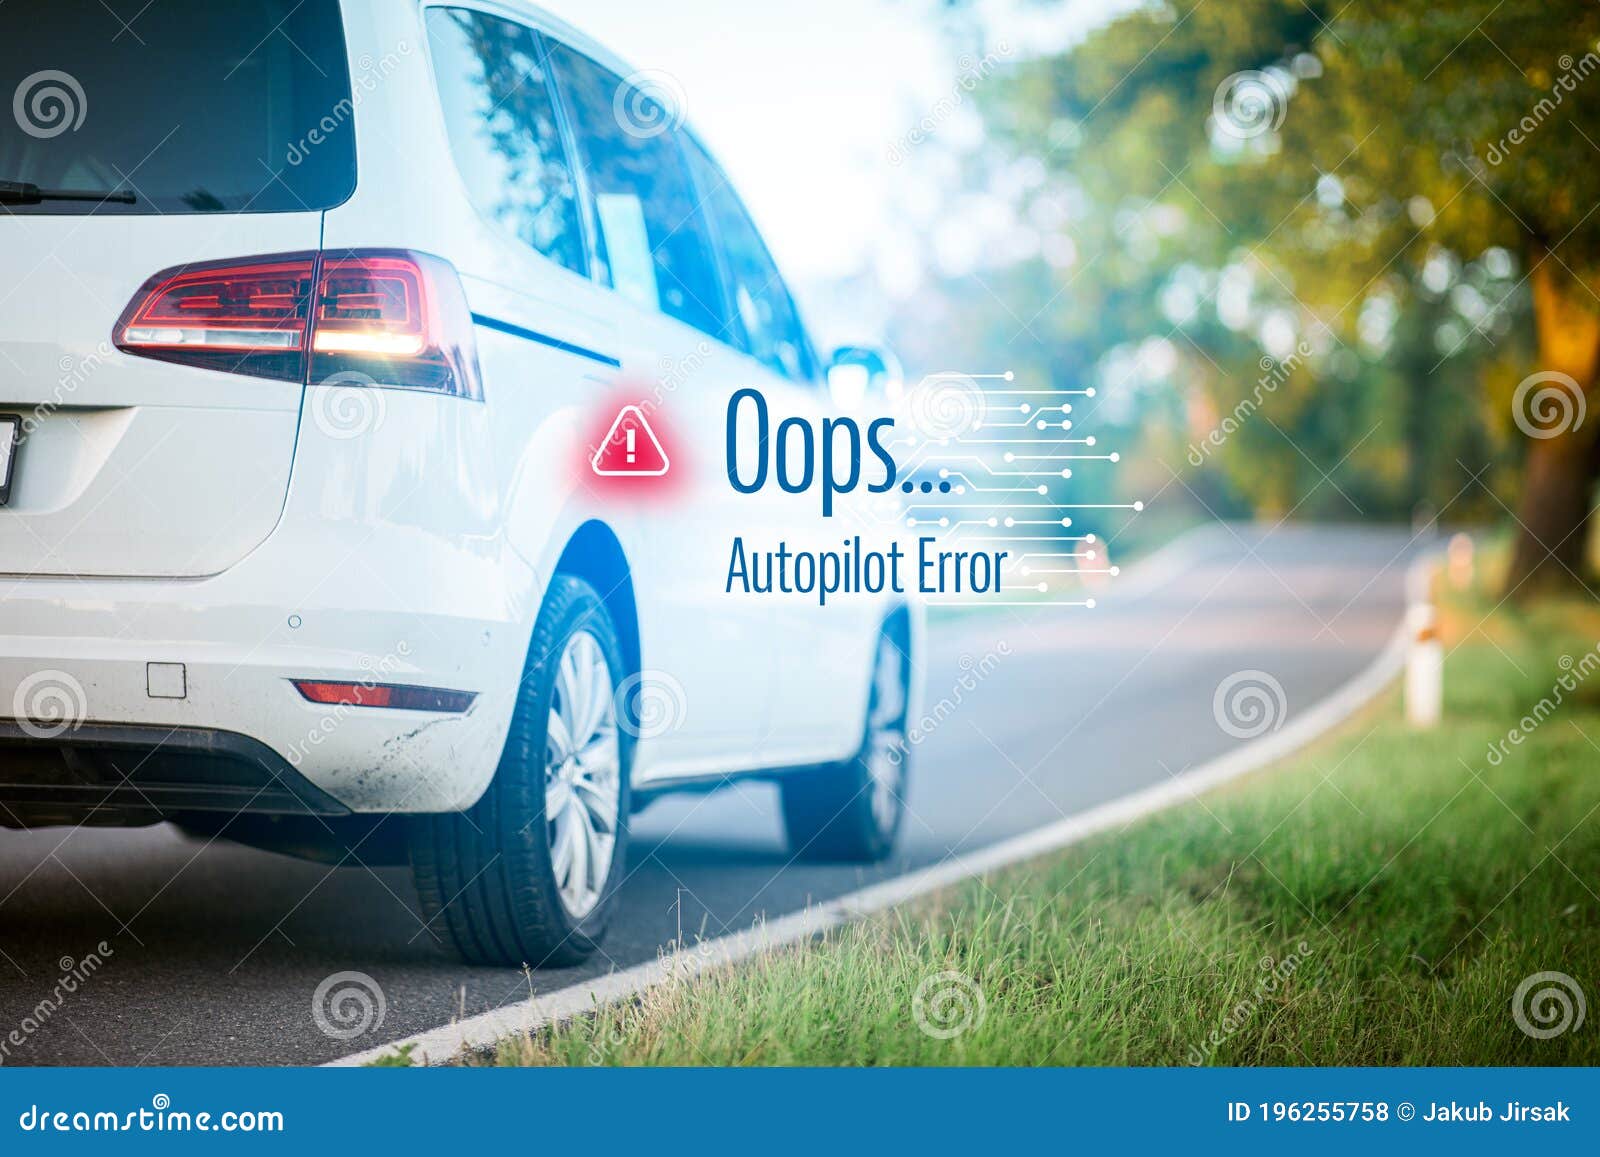 autonomous car autopilot software error concept